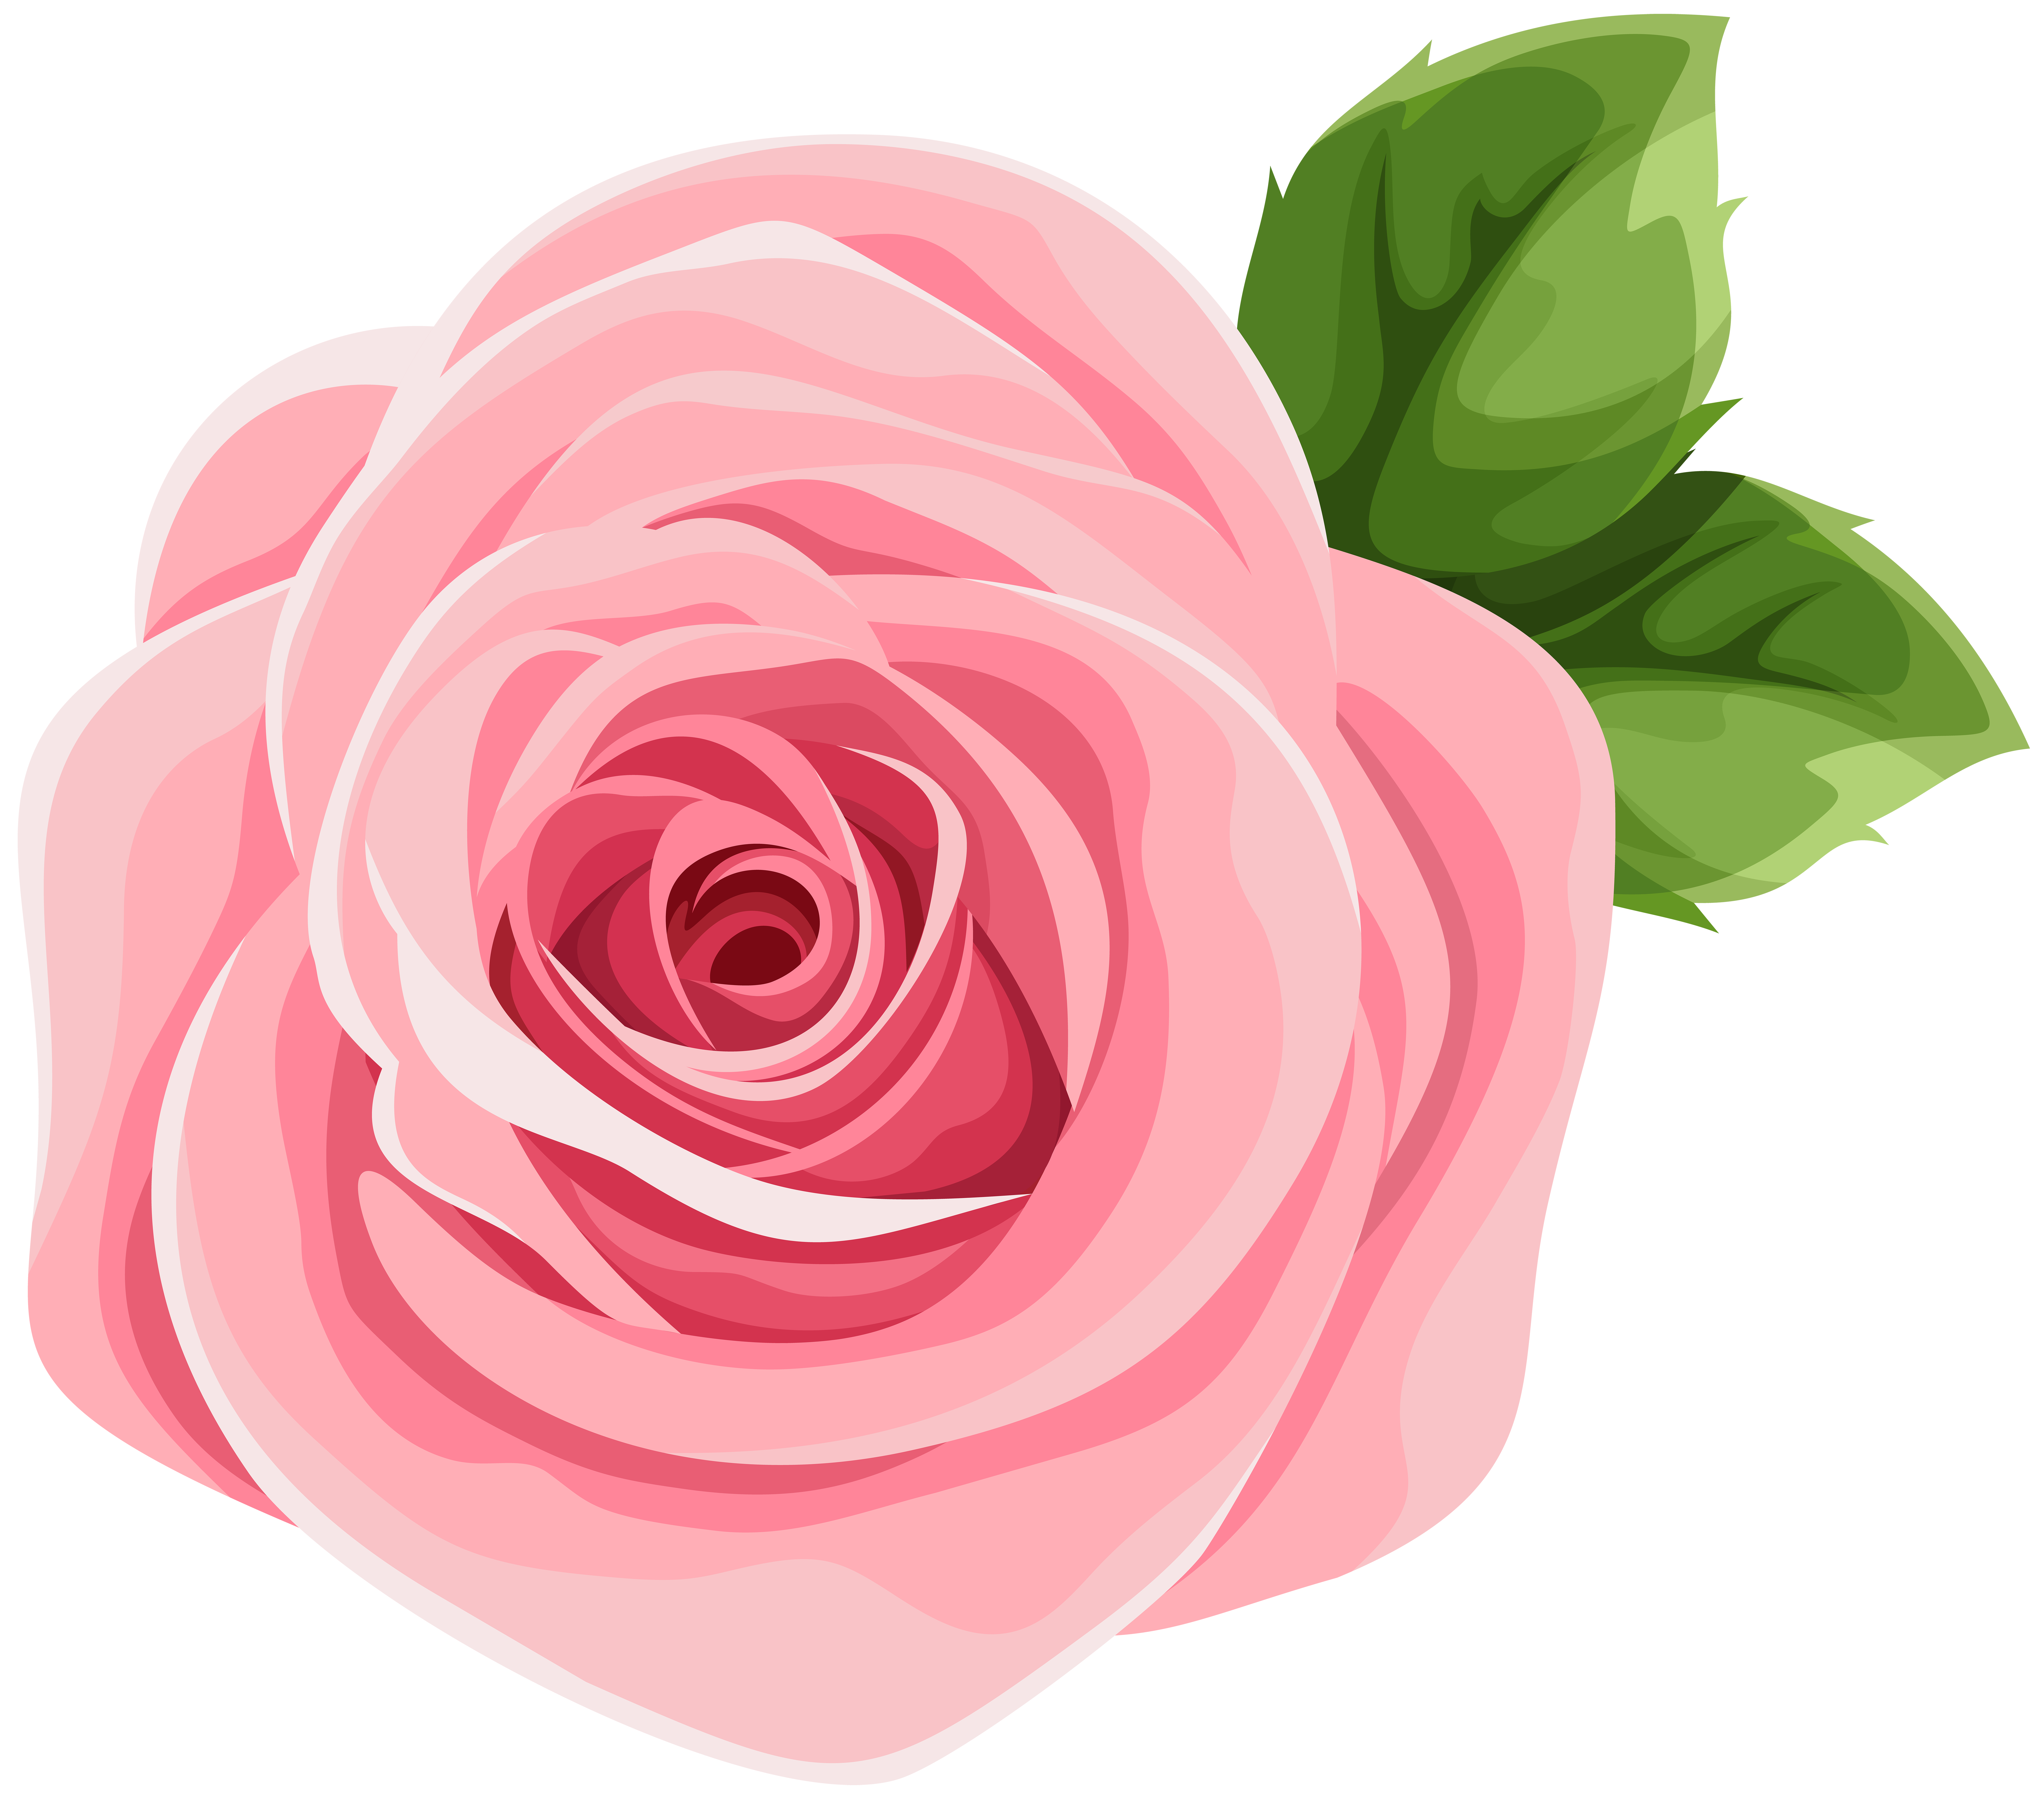 Bandeirinha Rosa Pink Png / Download transparent rosas png for free on ...